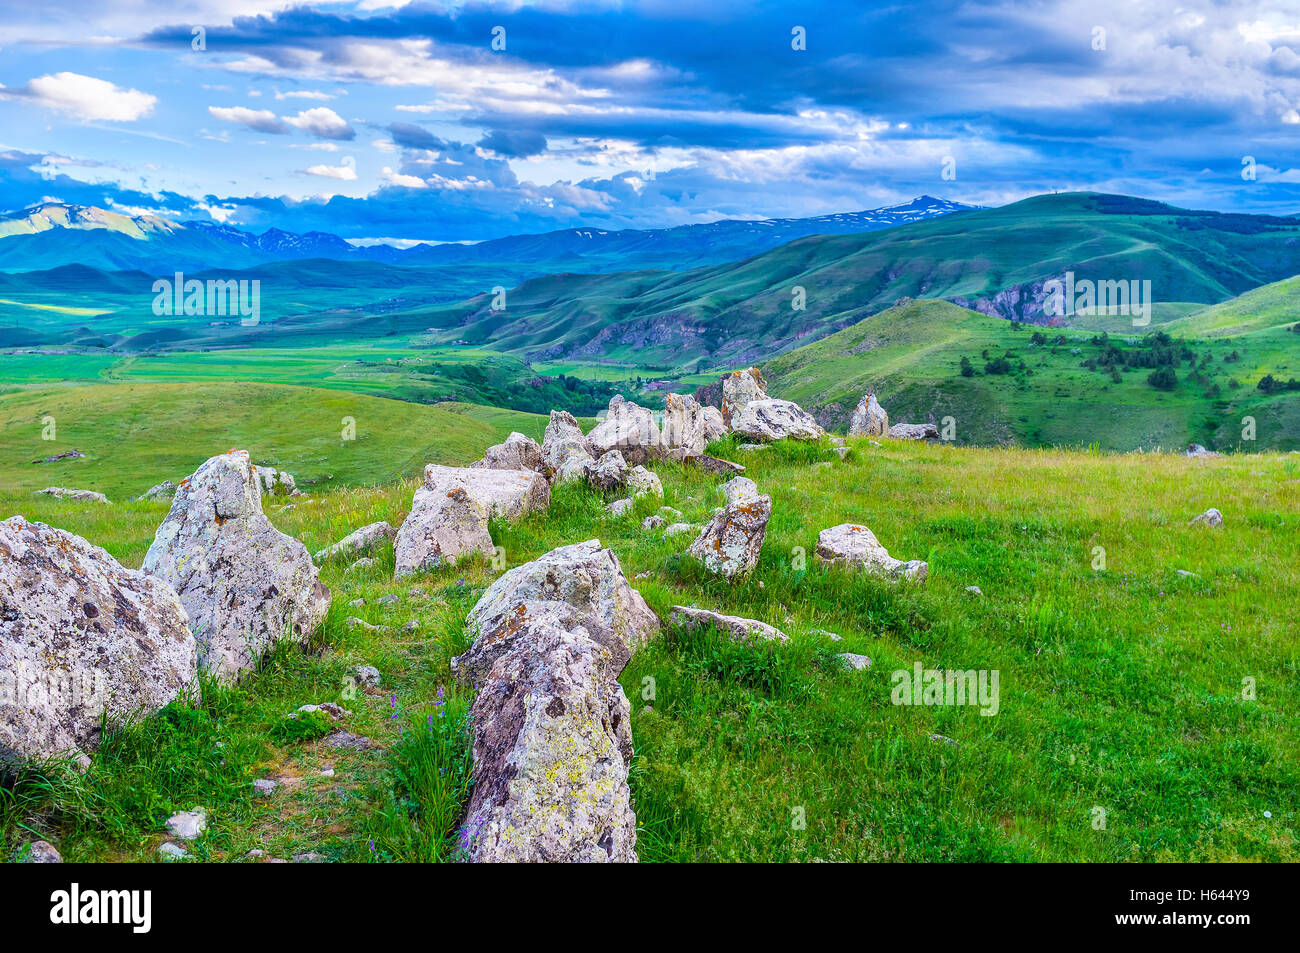 La ruta entre el callejón de piedra Zorats Karer o Carenish sitio arqueológico en la provincia de Syunik, en Armenia. Foto de stock